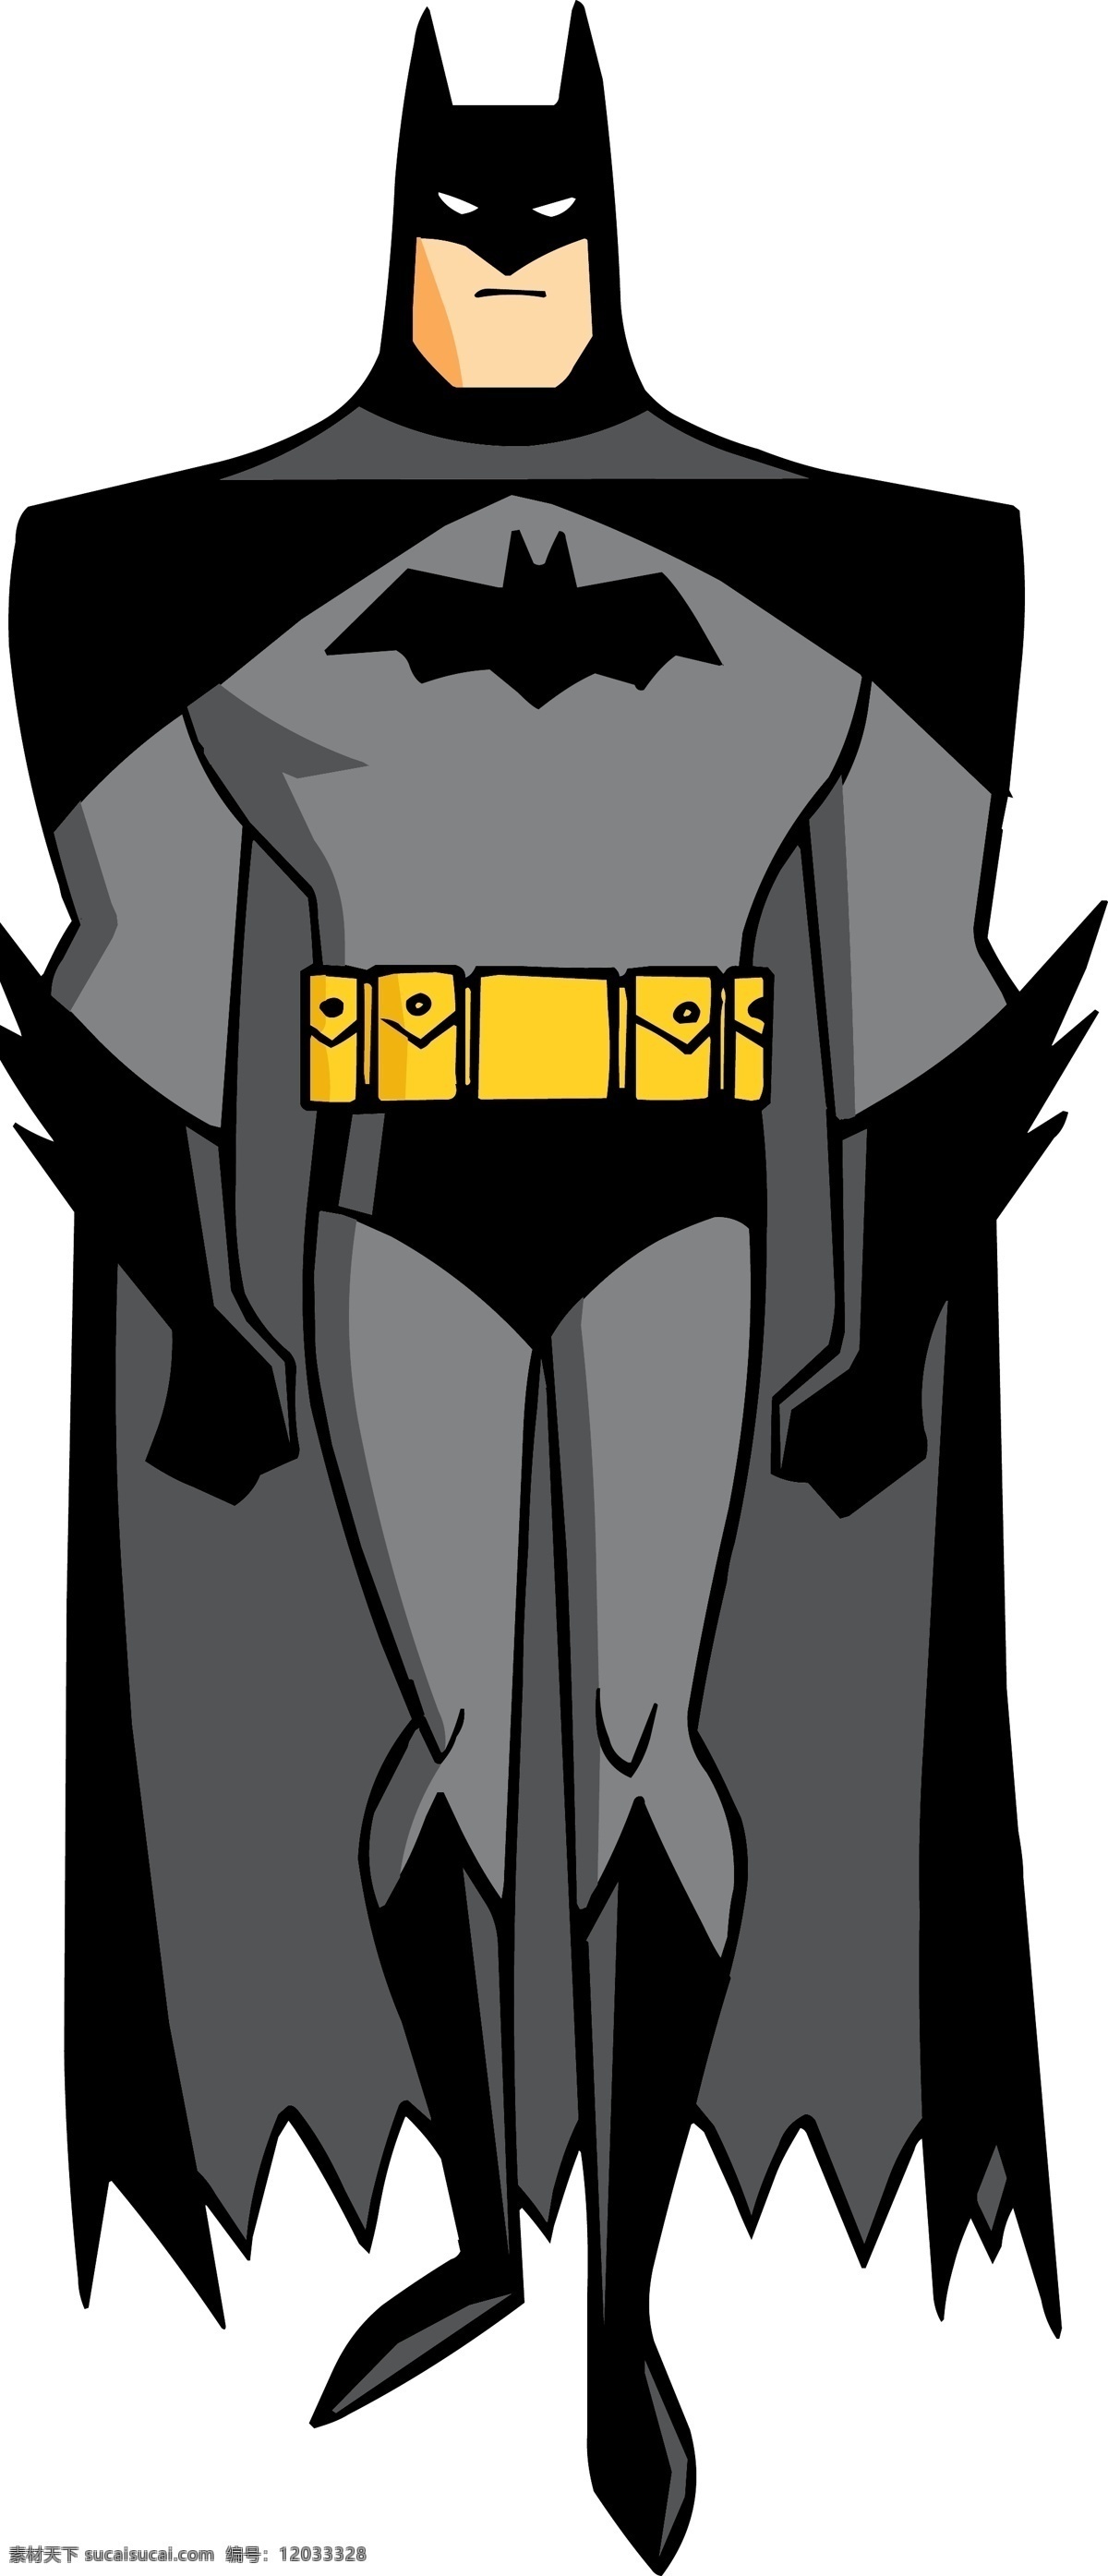 蝙蝠侠 动漫 动画 卡通 形 动漫动画 动漫人物 卡通形象 卡通图库 矢量设计 图标 手绘 抠图